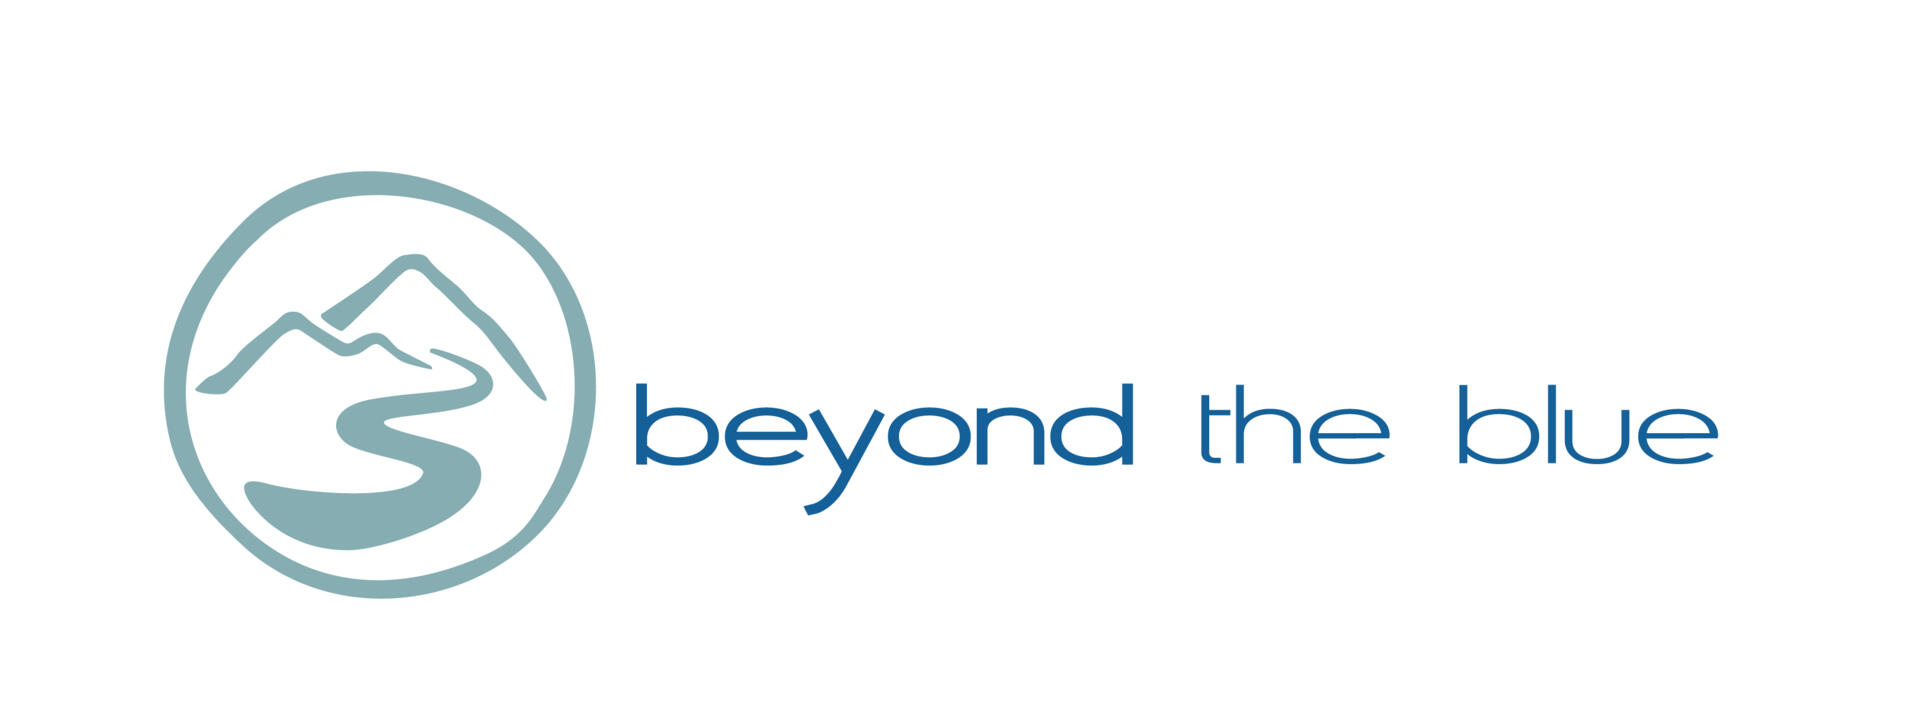 beyond-the-blue-logo_no-strap.jpg